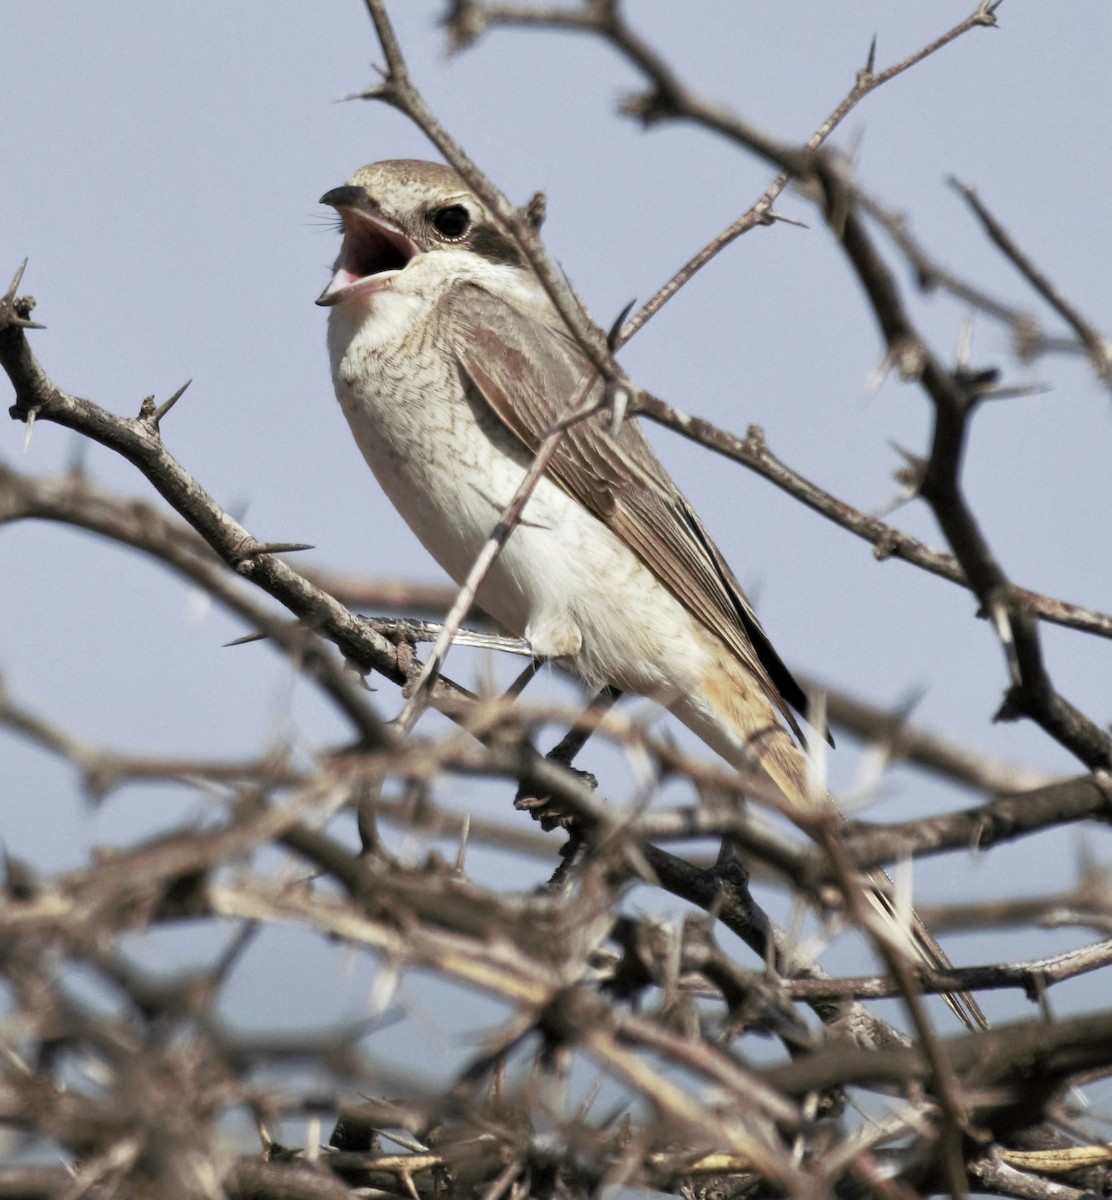 Red-tailed Shrike - jaysukh parekh Suman